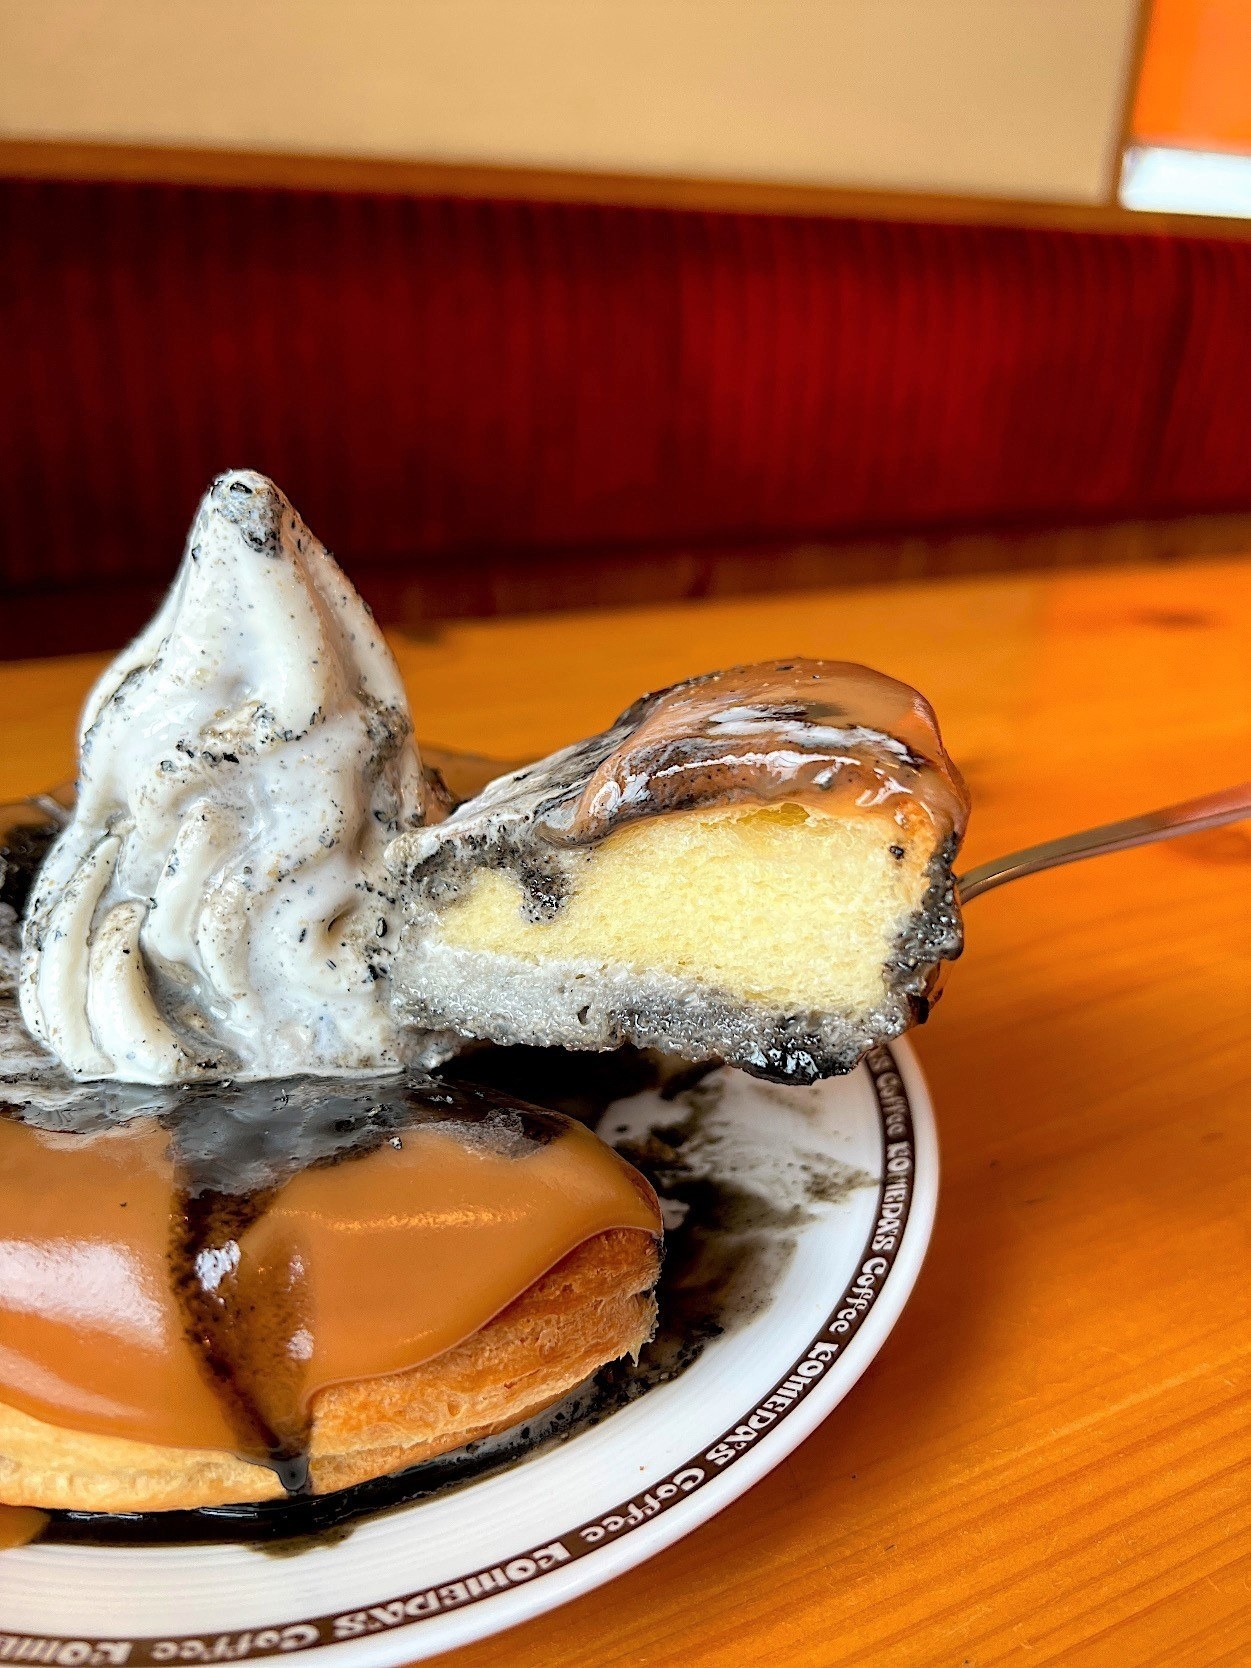 ☆コメダ珈琲店の「シノワール和香」は、ボリューム満点でおいしいデニッシュとソフトクリームのオススメフードメニューです。